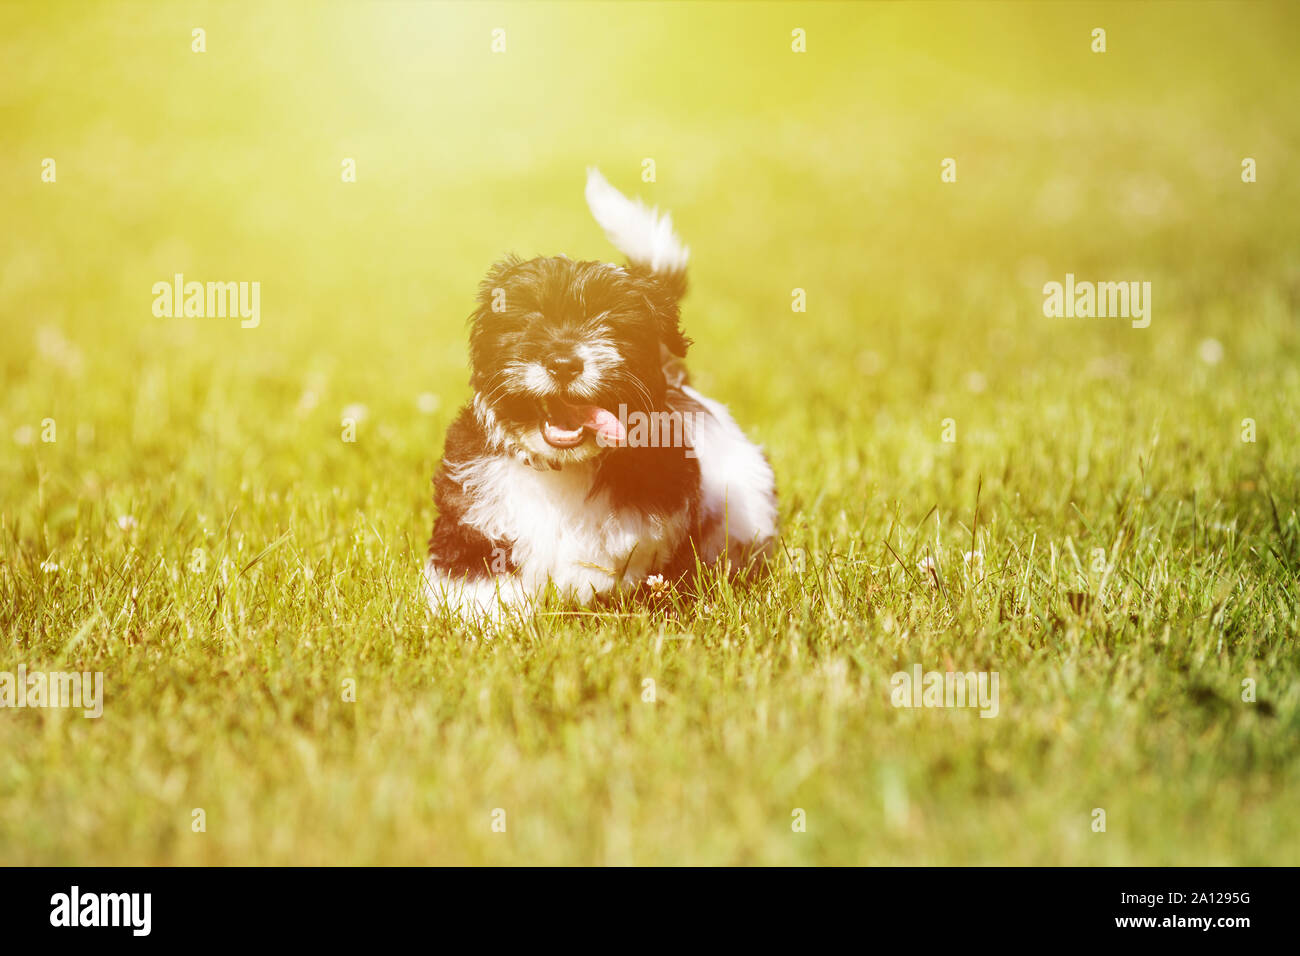 Heureux le noir et blanc jeune chien qui court sur l'herbe Banque D'Images